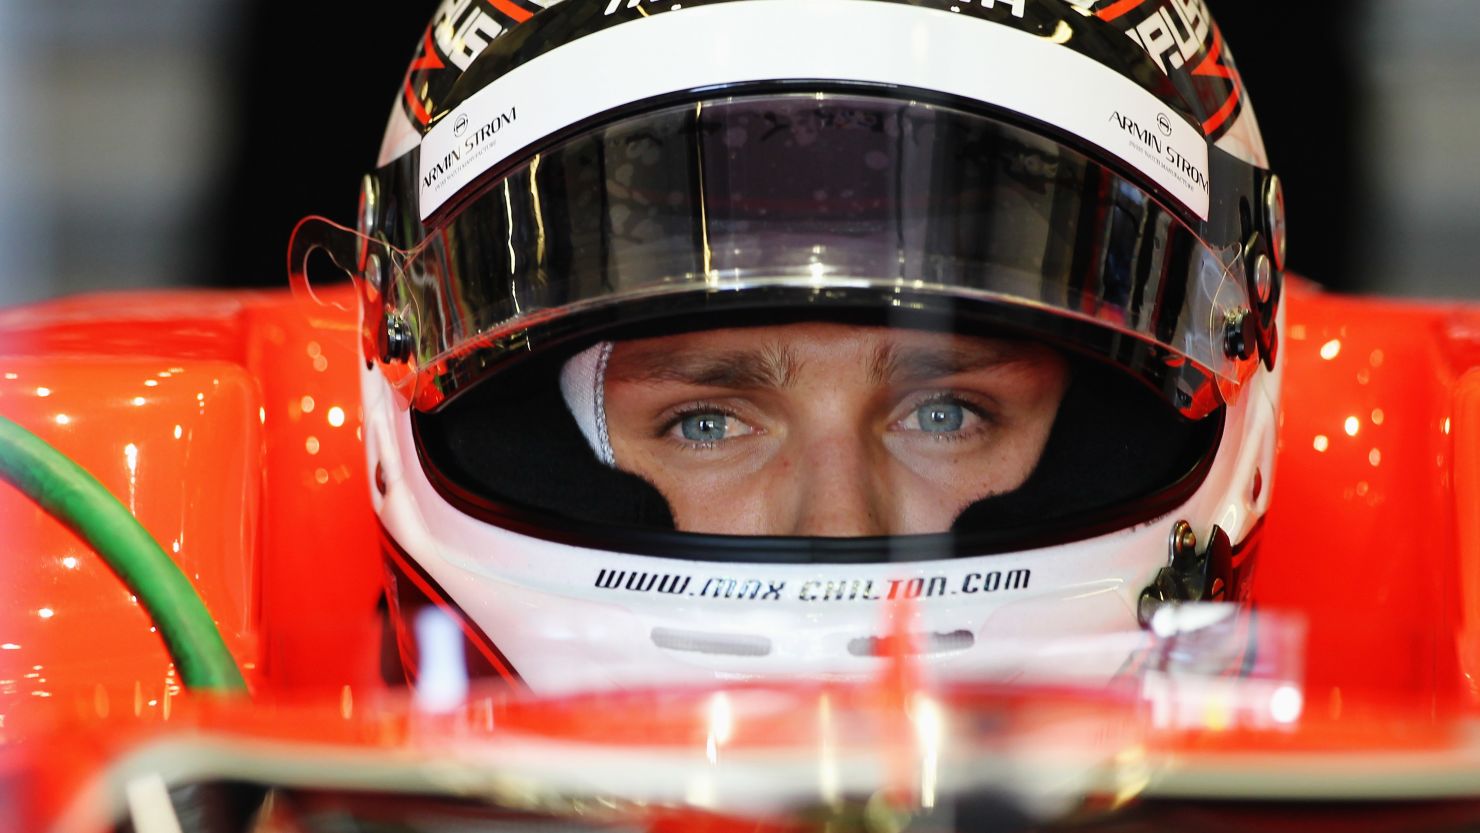 Briton Max Chilton will make his Formula One debut in the 2013 season with the Marussia F1 team